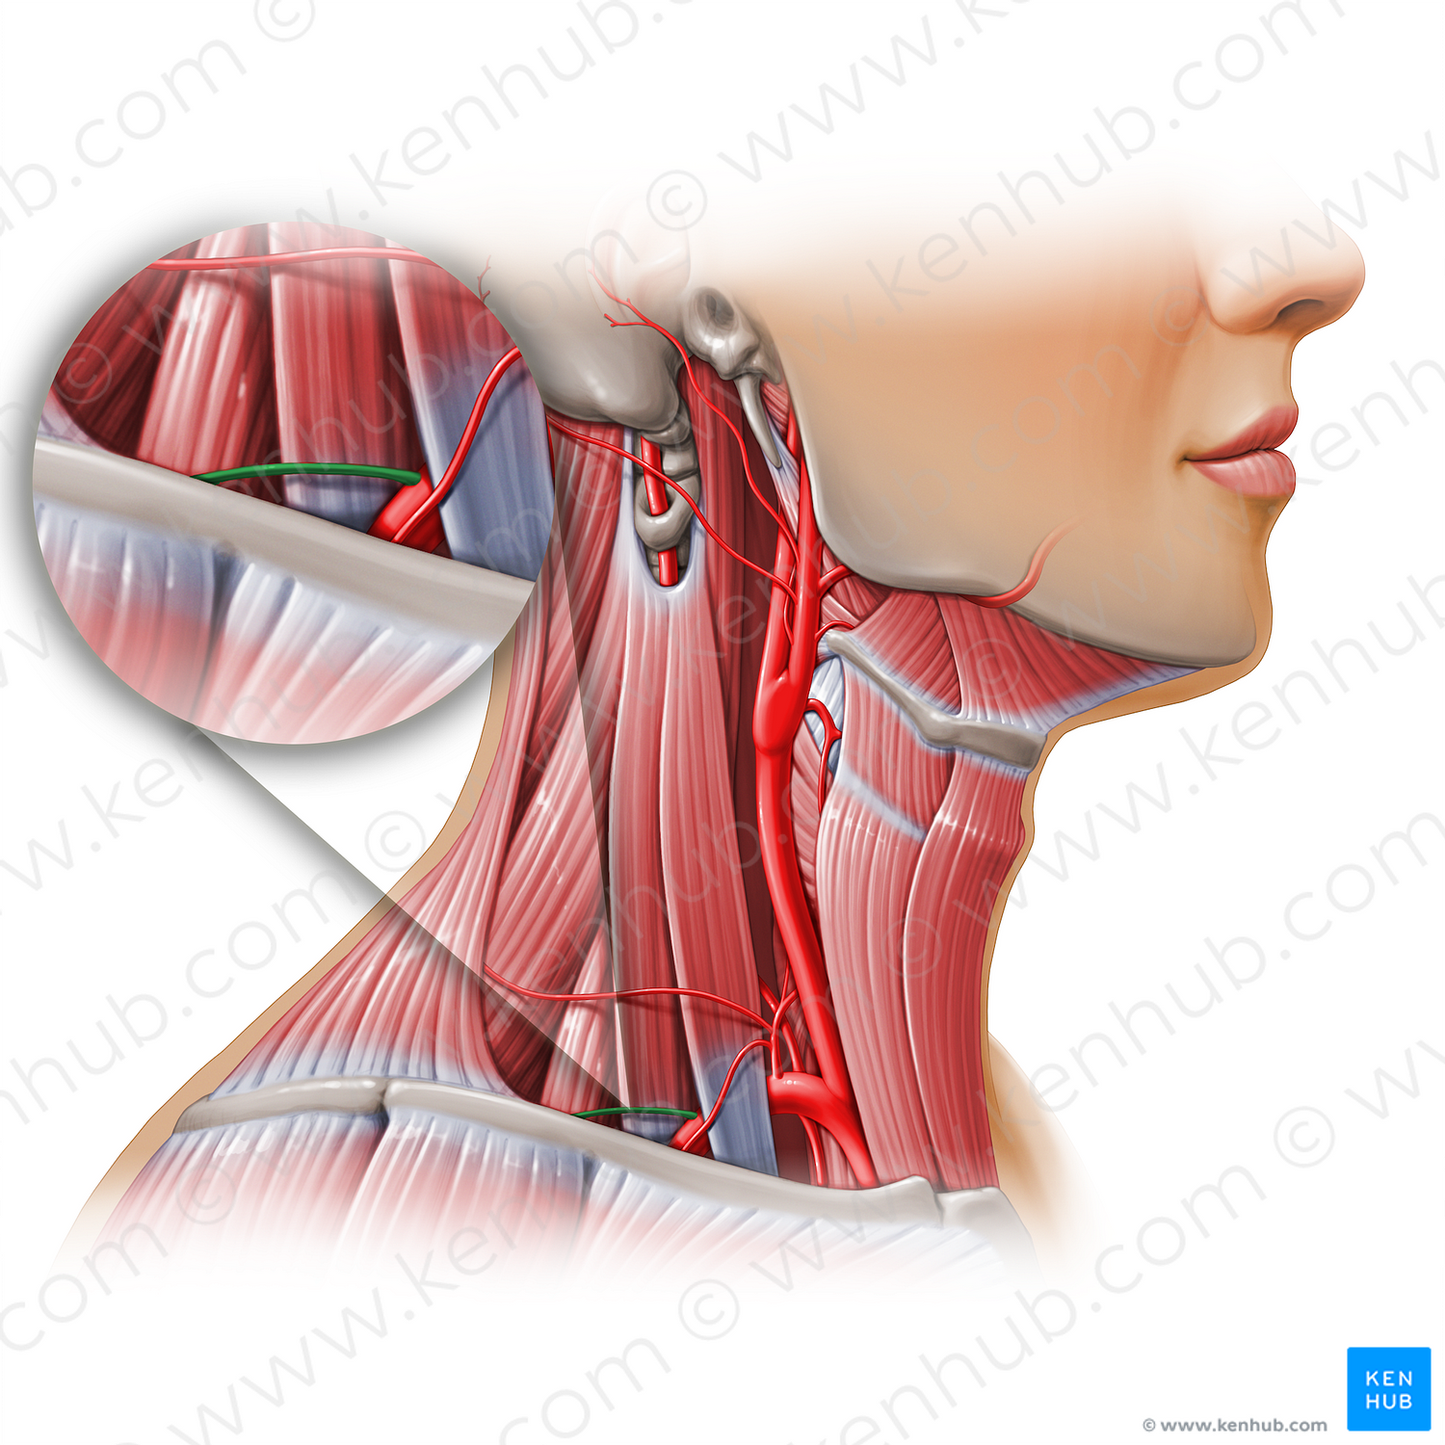 Dorsal scapular artery (#11167)